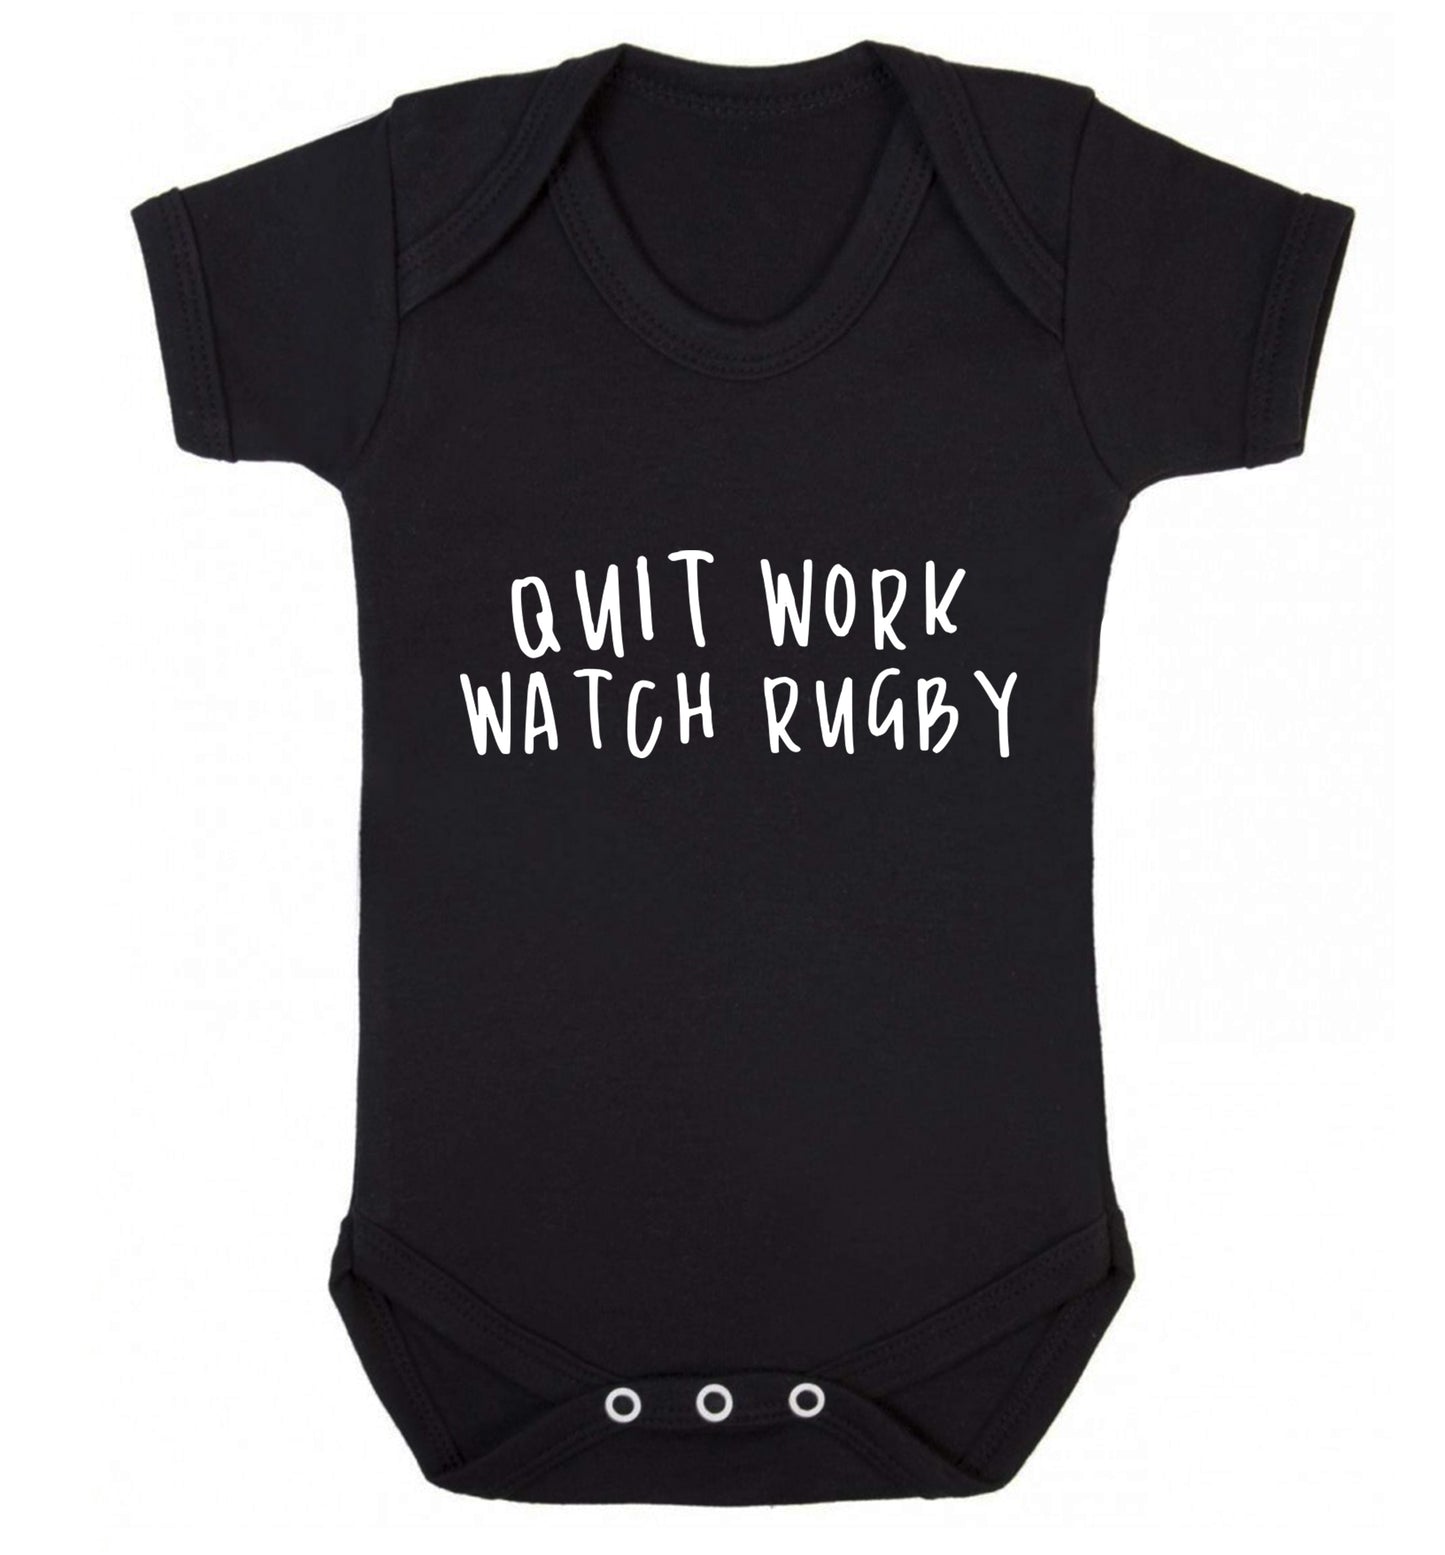 Quit work watch rugby Baby Vest black 18-24 months